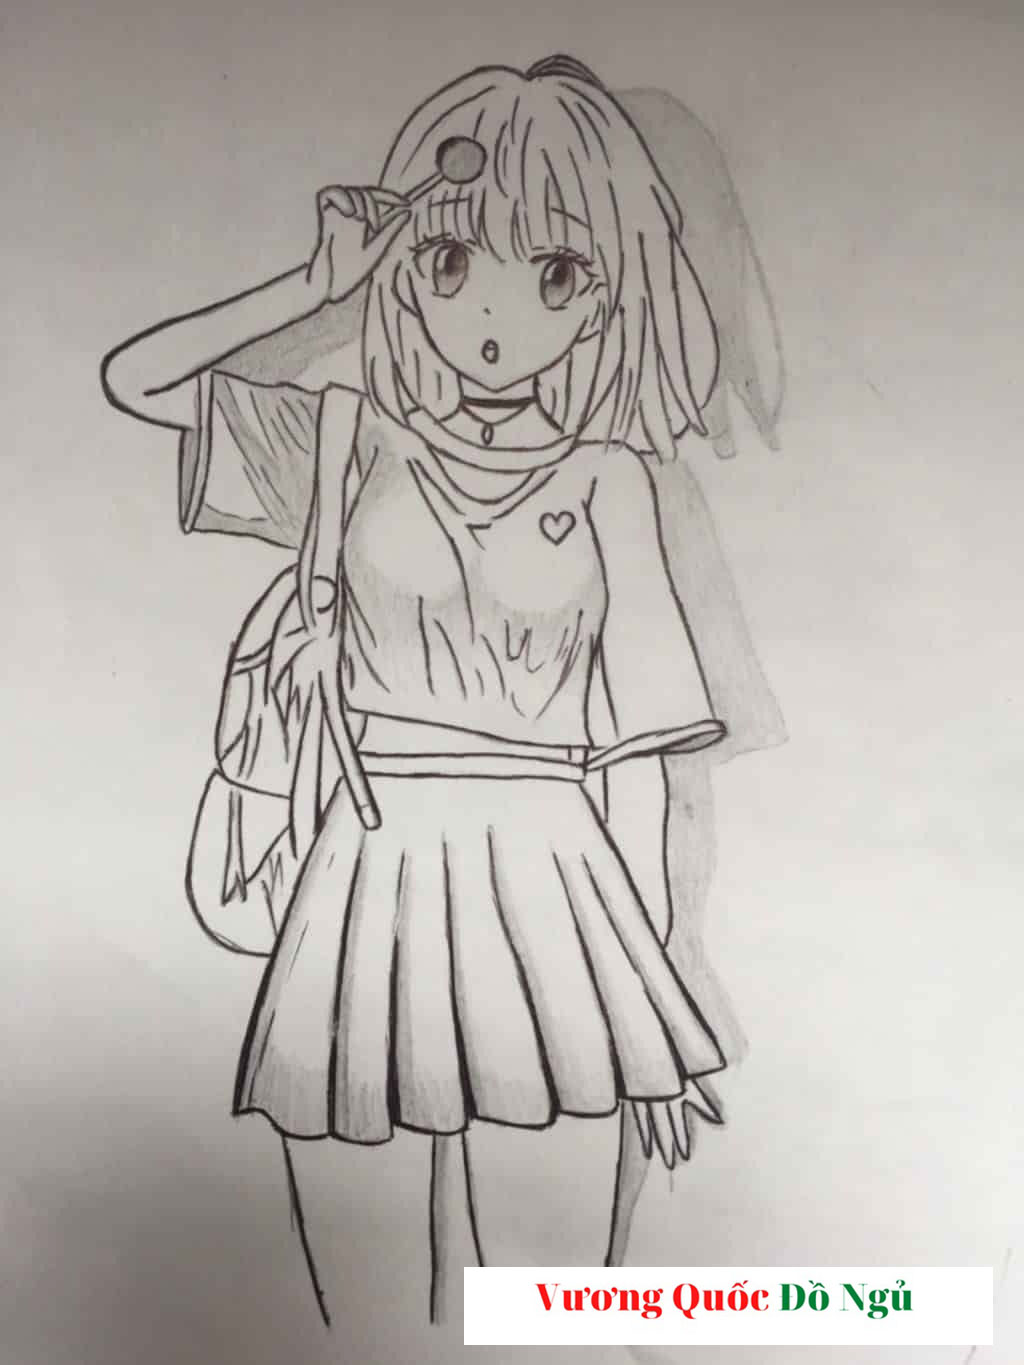 Cách vẽ anime nữ đơn giản bằng bút chì ❤️1001 tranh đẹp